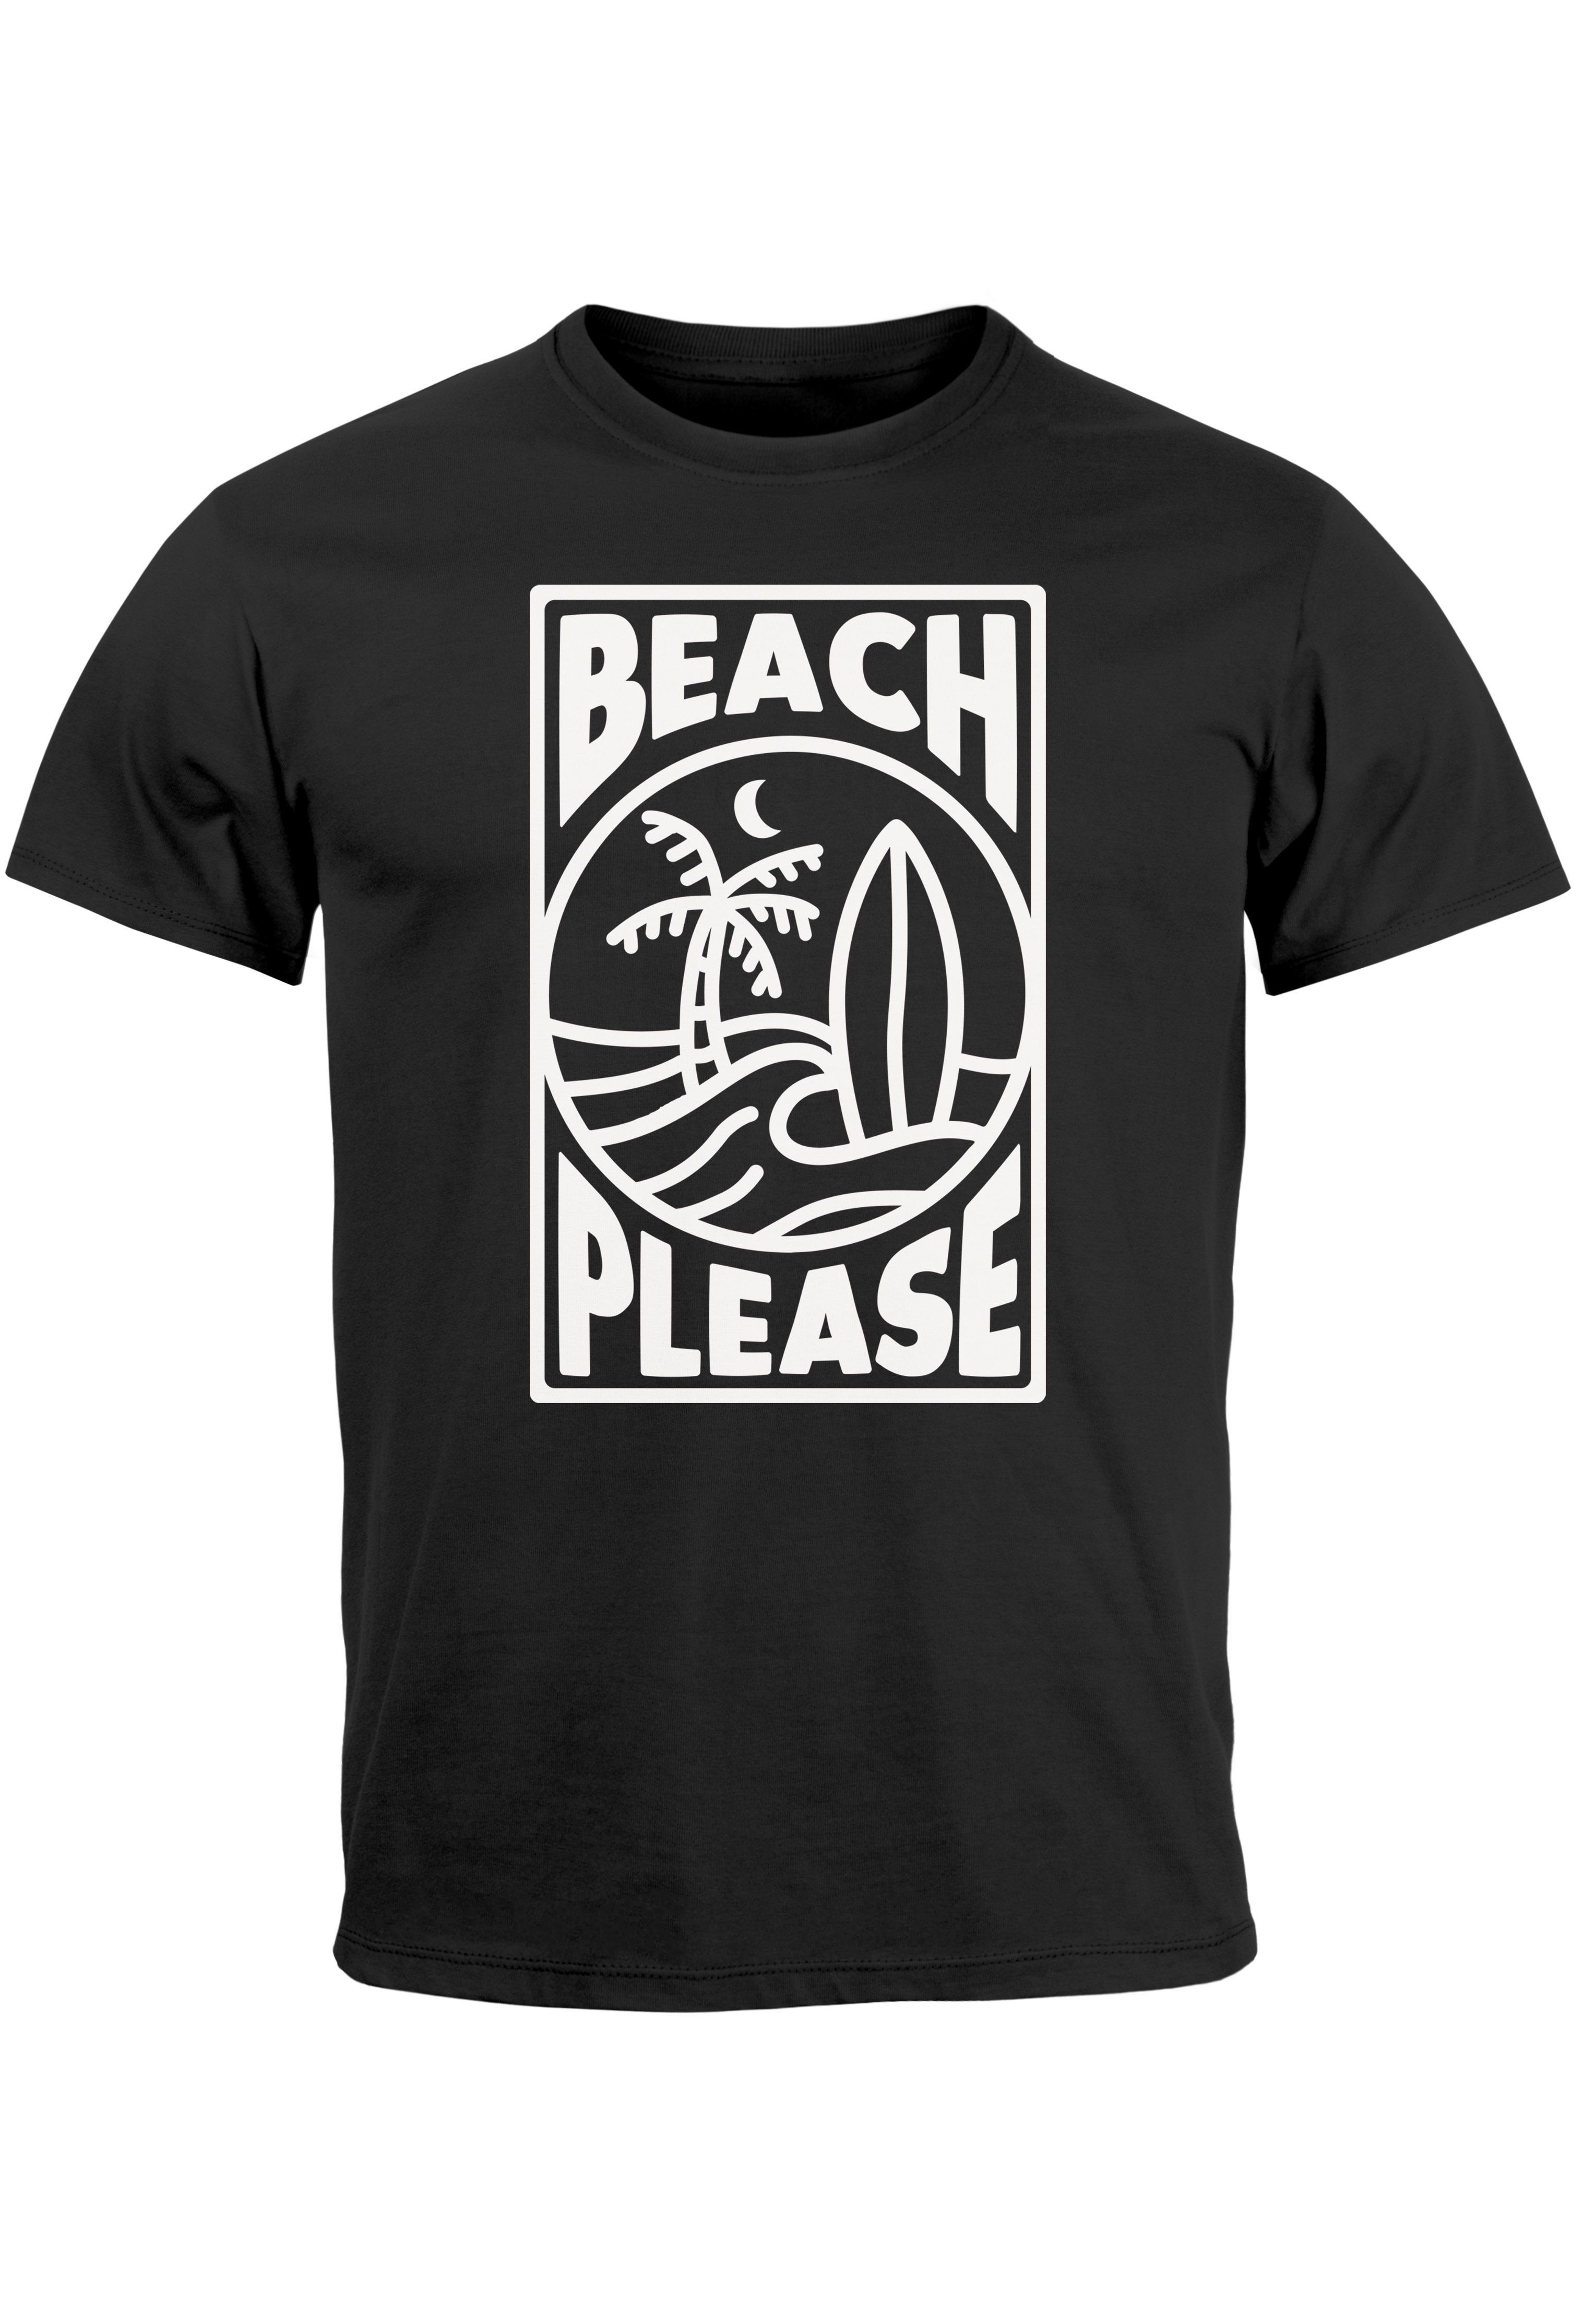 Neverless Print-Shirt Herren T-Shirt Wave schwarz mit Surfboard Print Sommer Surfing Welle Print Beach Please